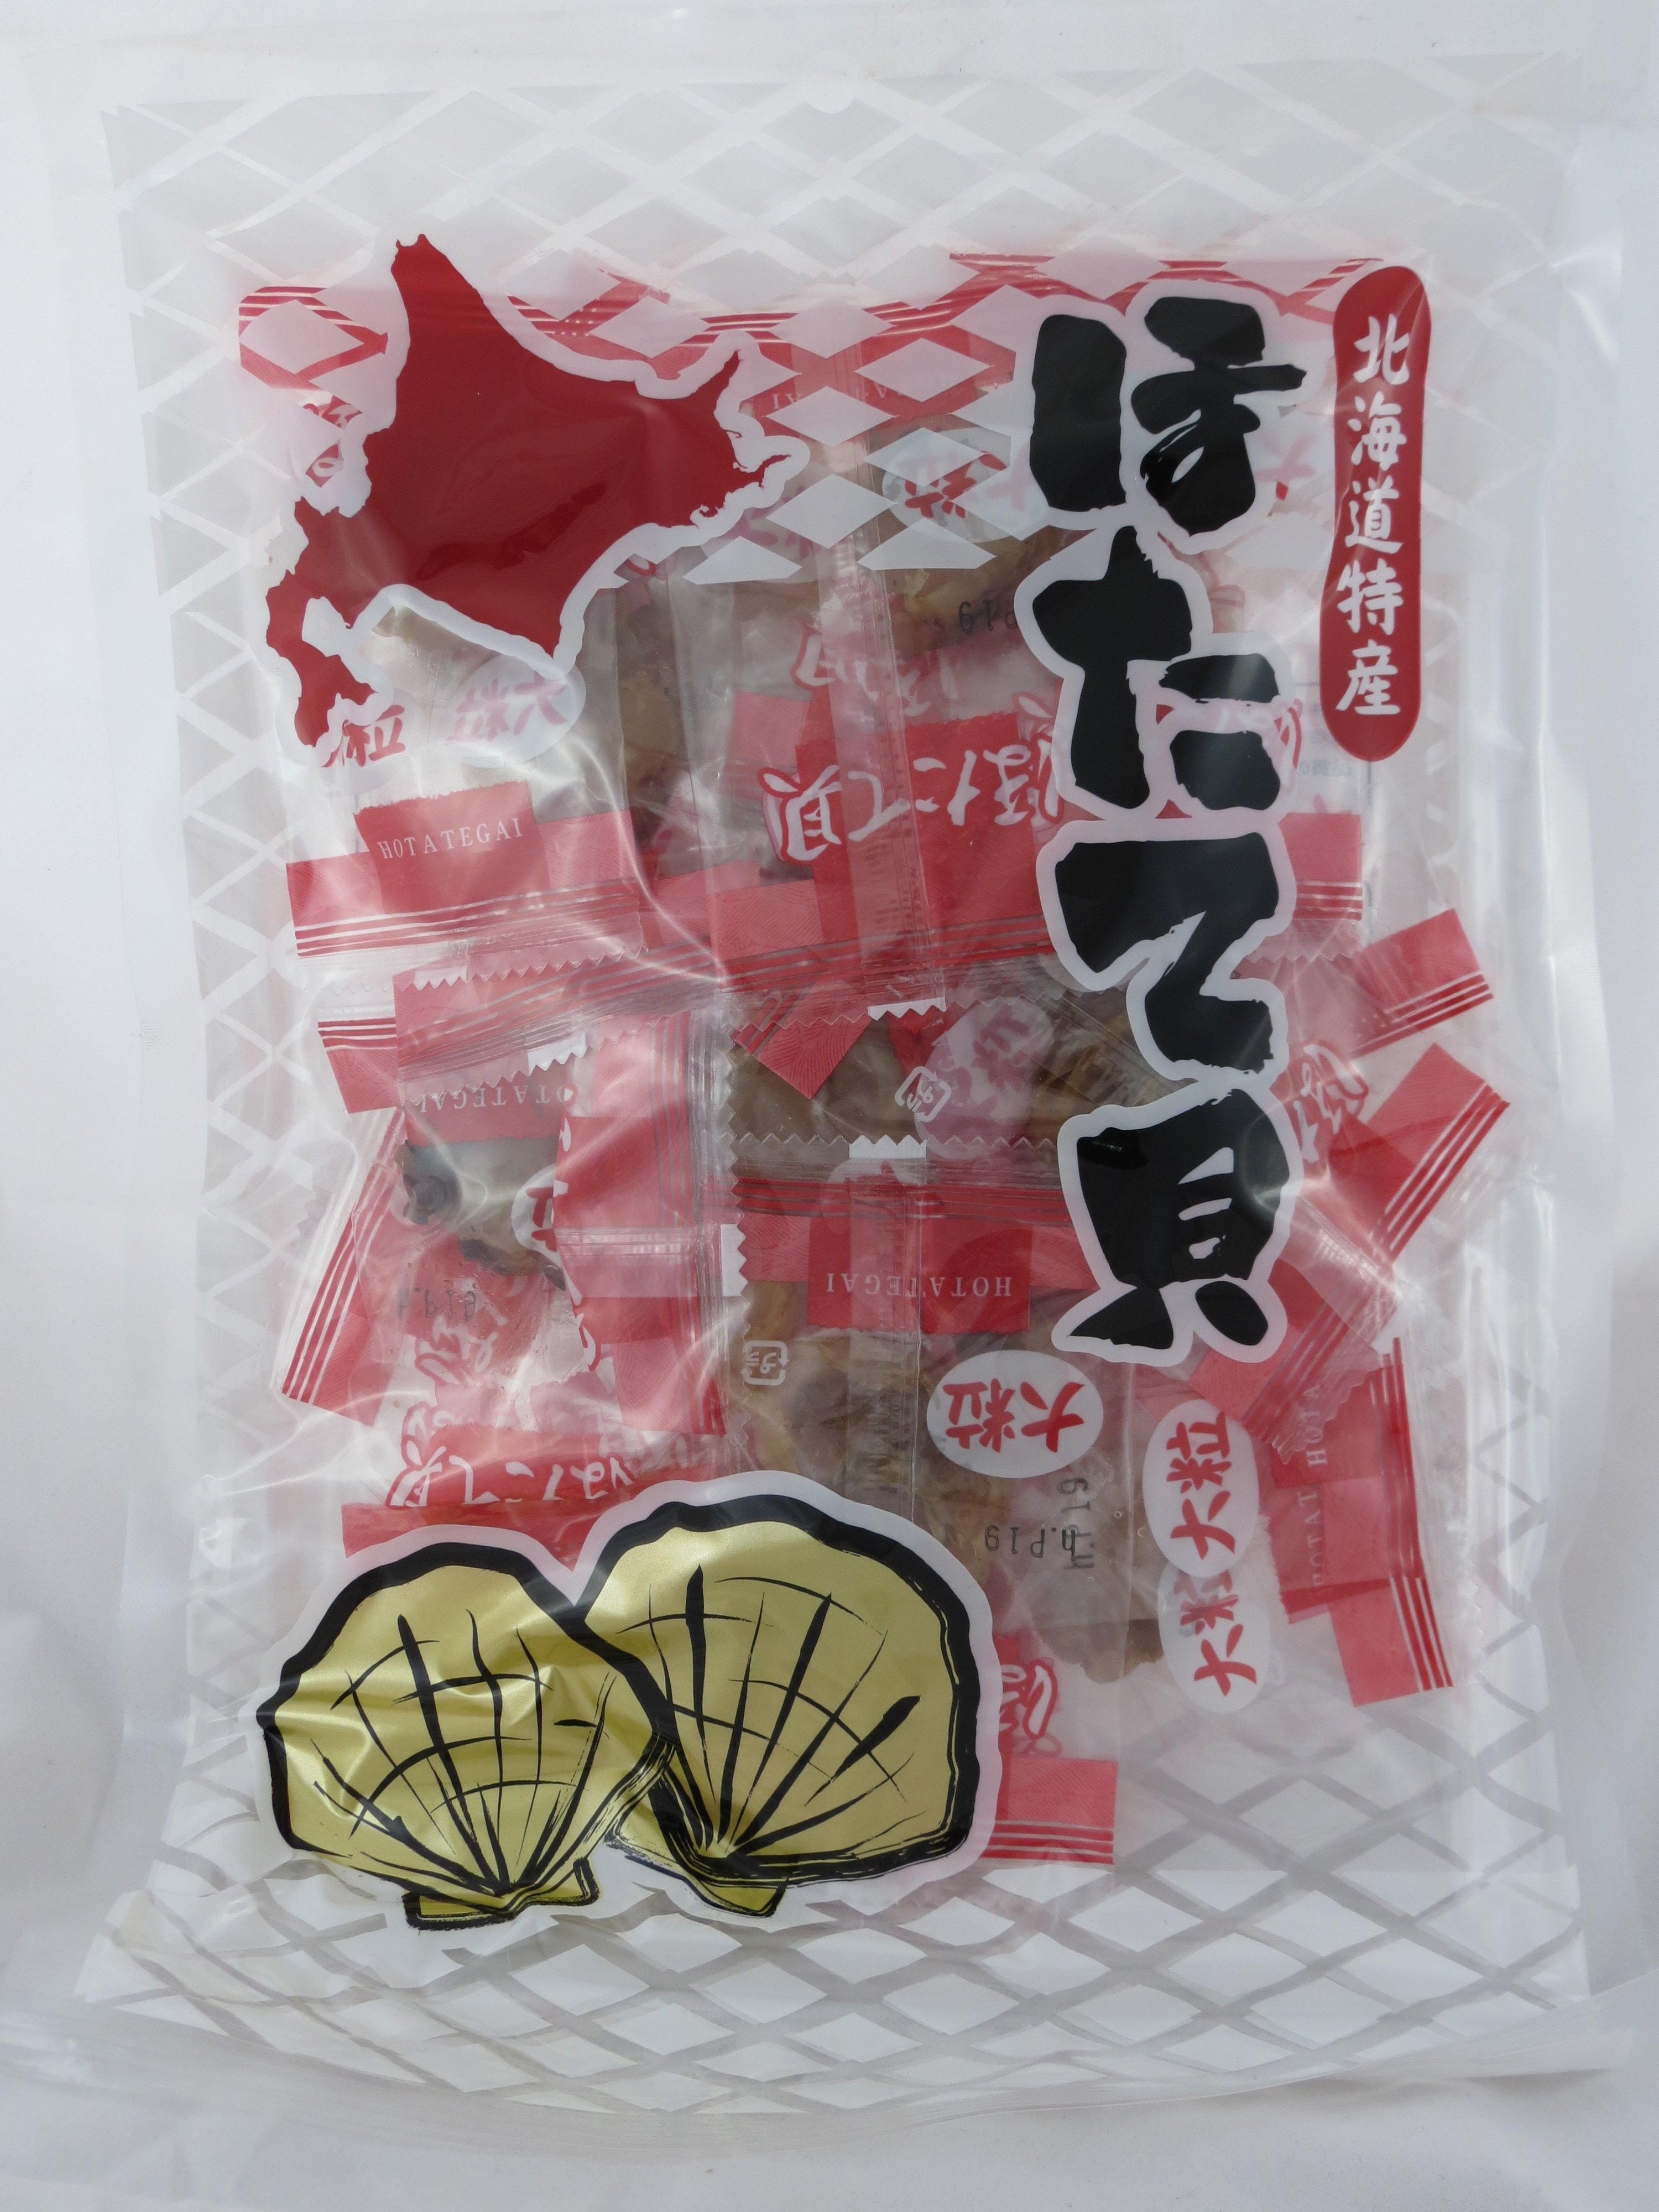 ＊日式雜貨館＊日本原裝 北海道 干貝糖 燒干貝 炭燒大粒干貝 燒帆立貝 原味燒干貝 135g 現貨